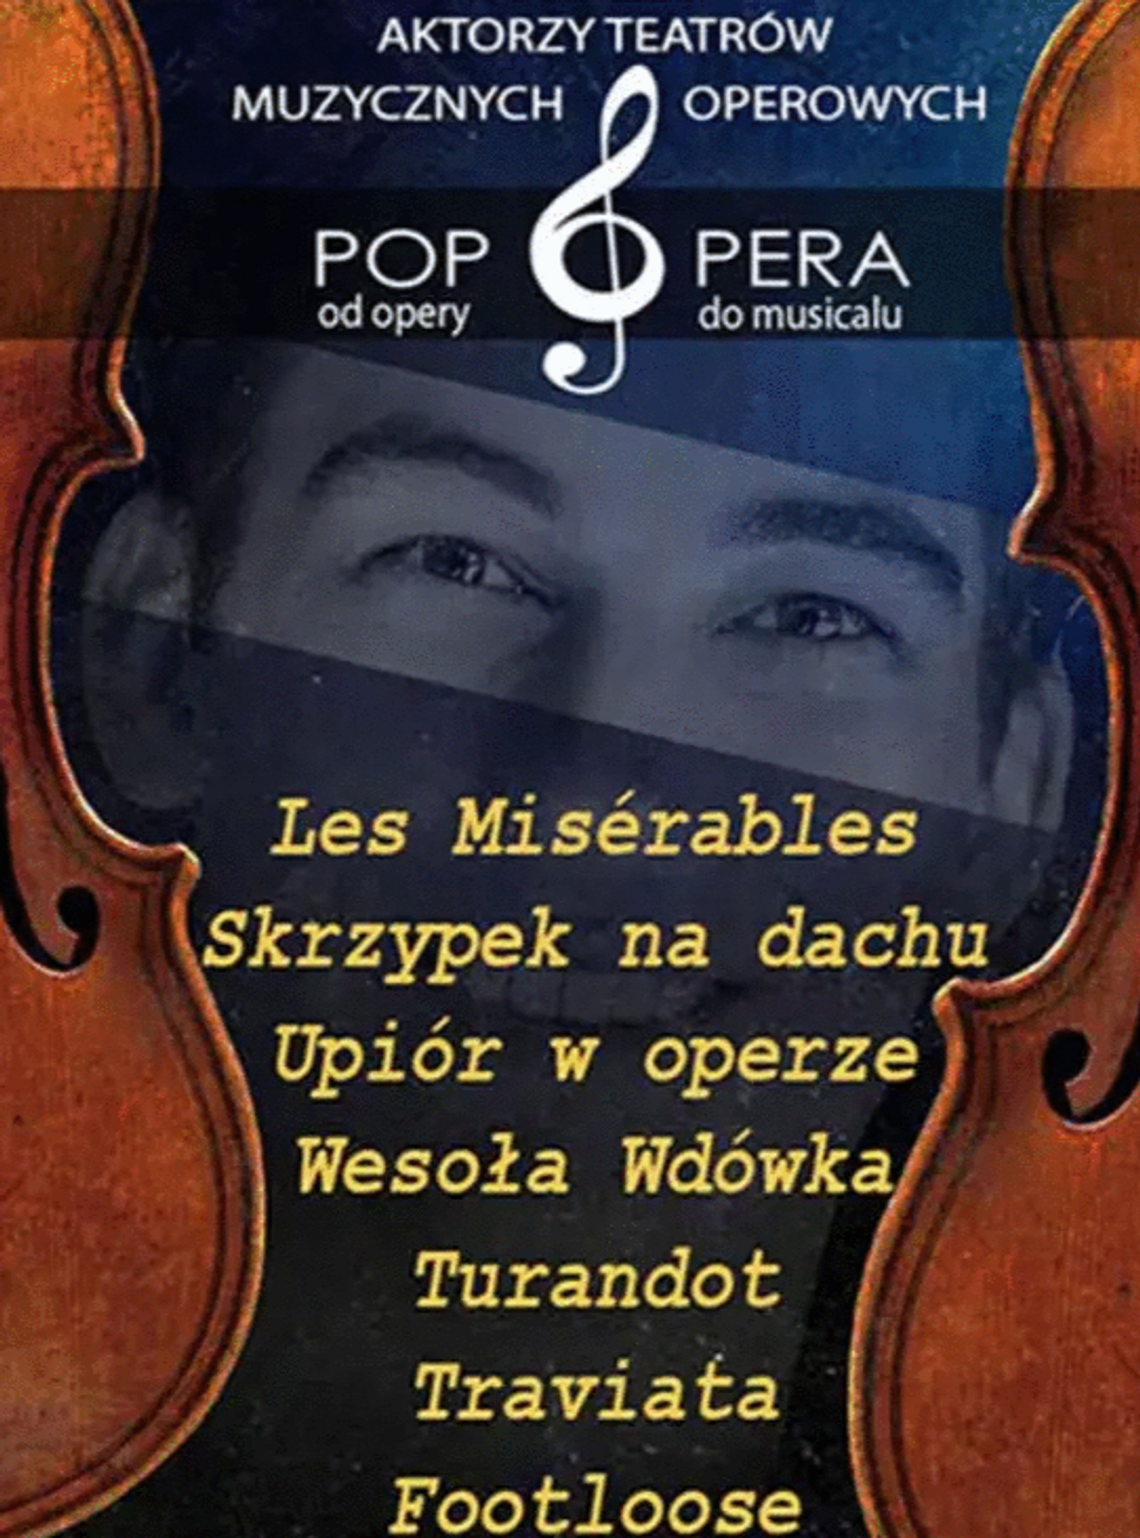 Pop Opera zawita w Rzeszowie. Jedyny taki projekt w Polsce